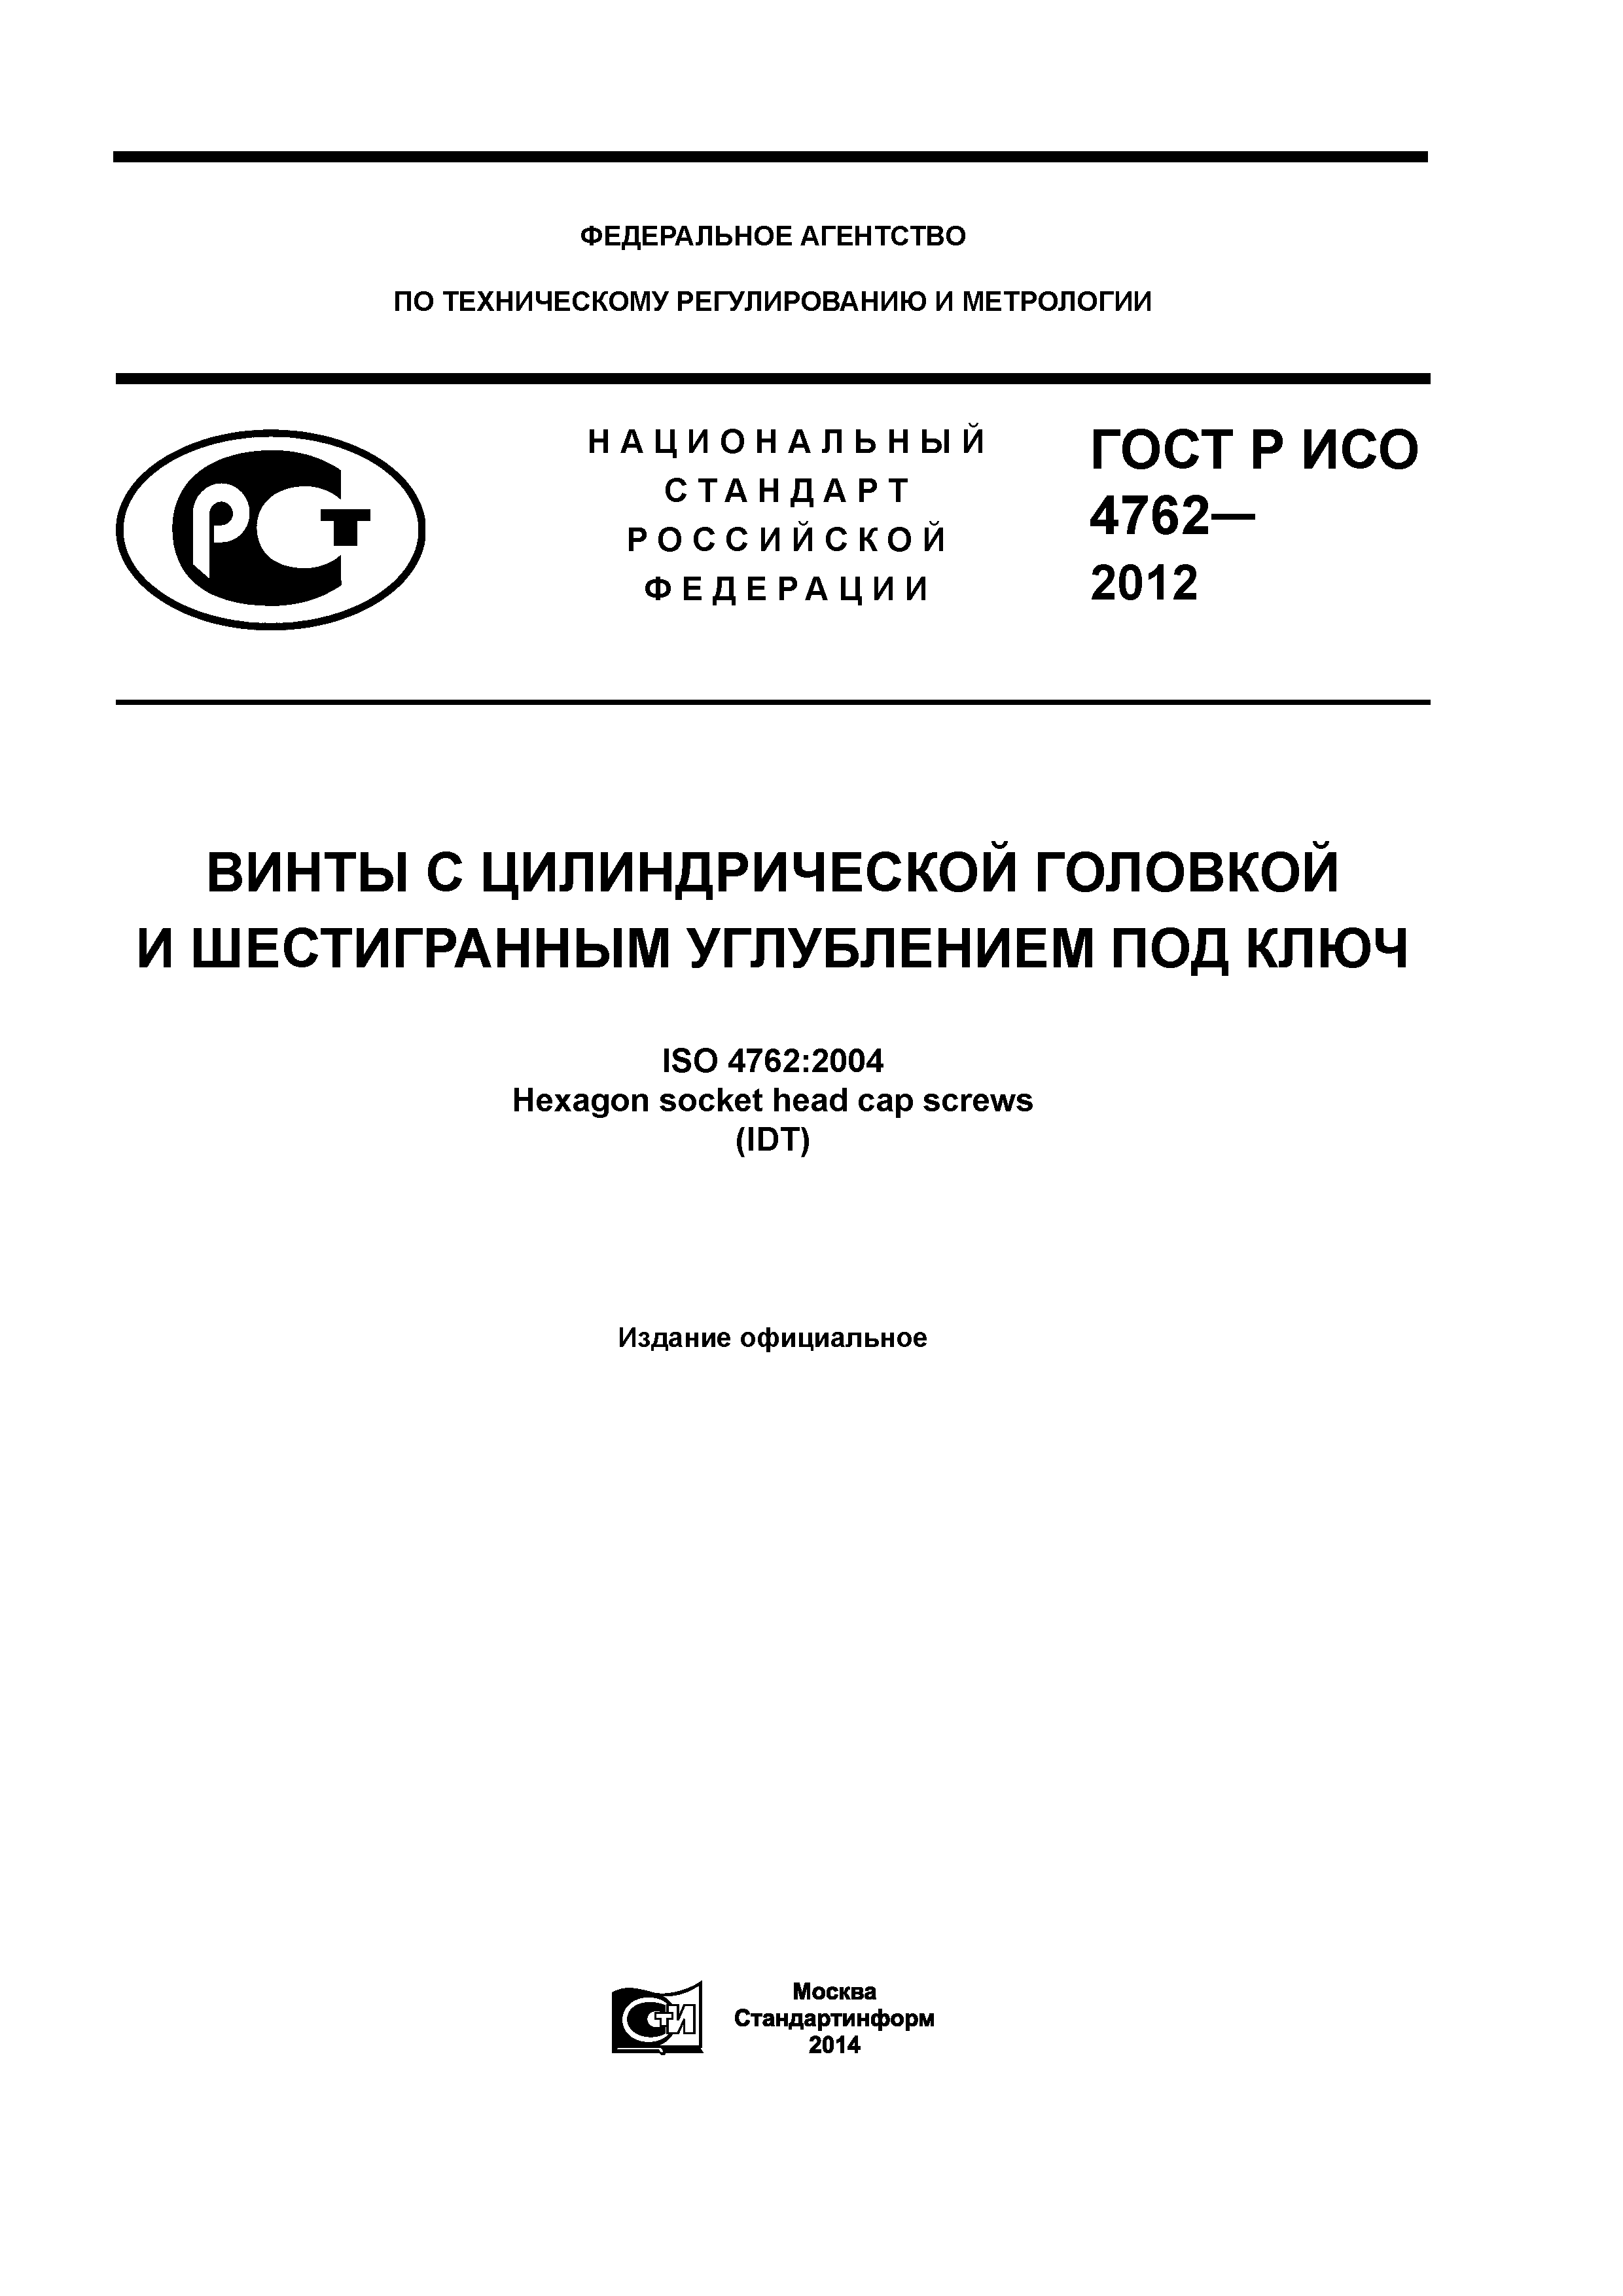 ГОСТ Р ИСО 4762-2012